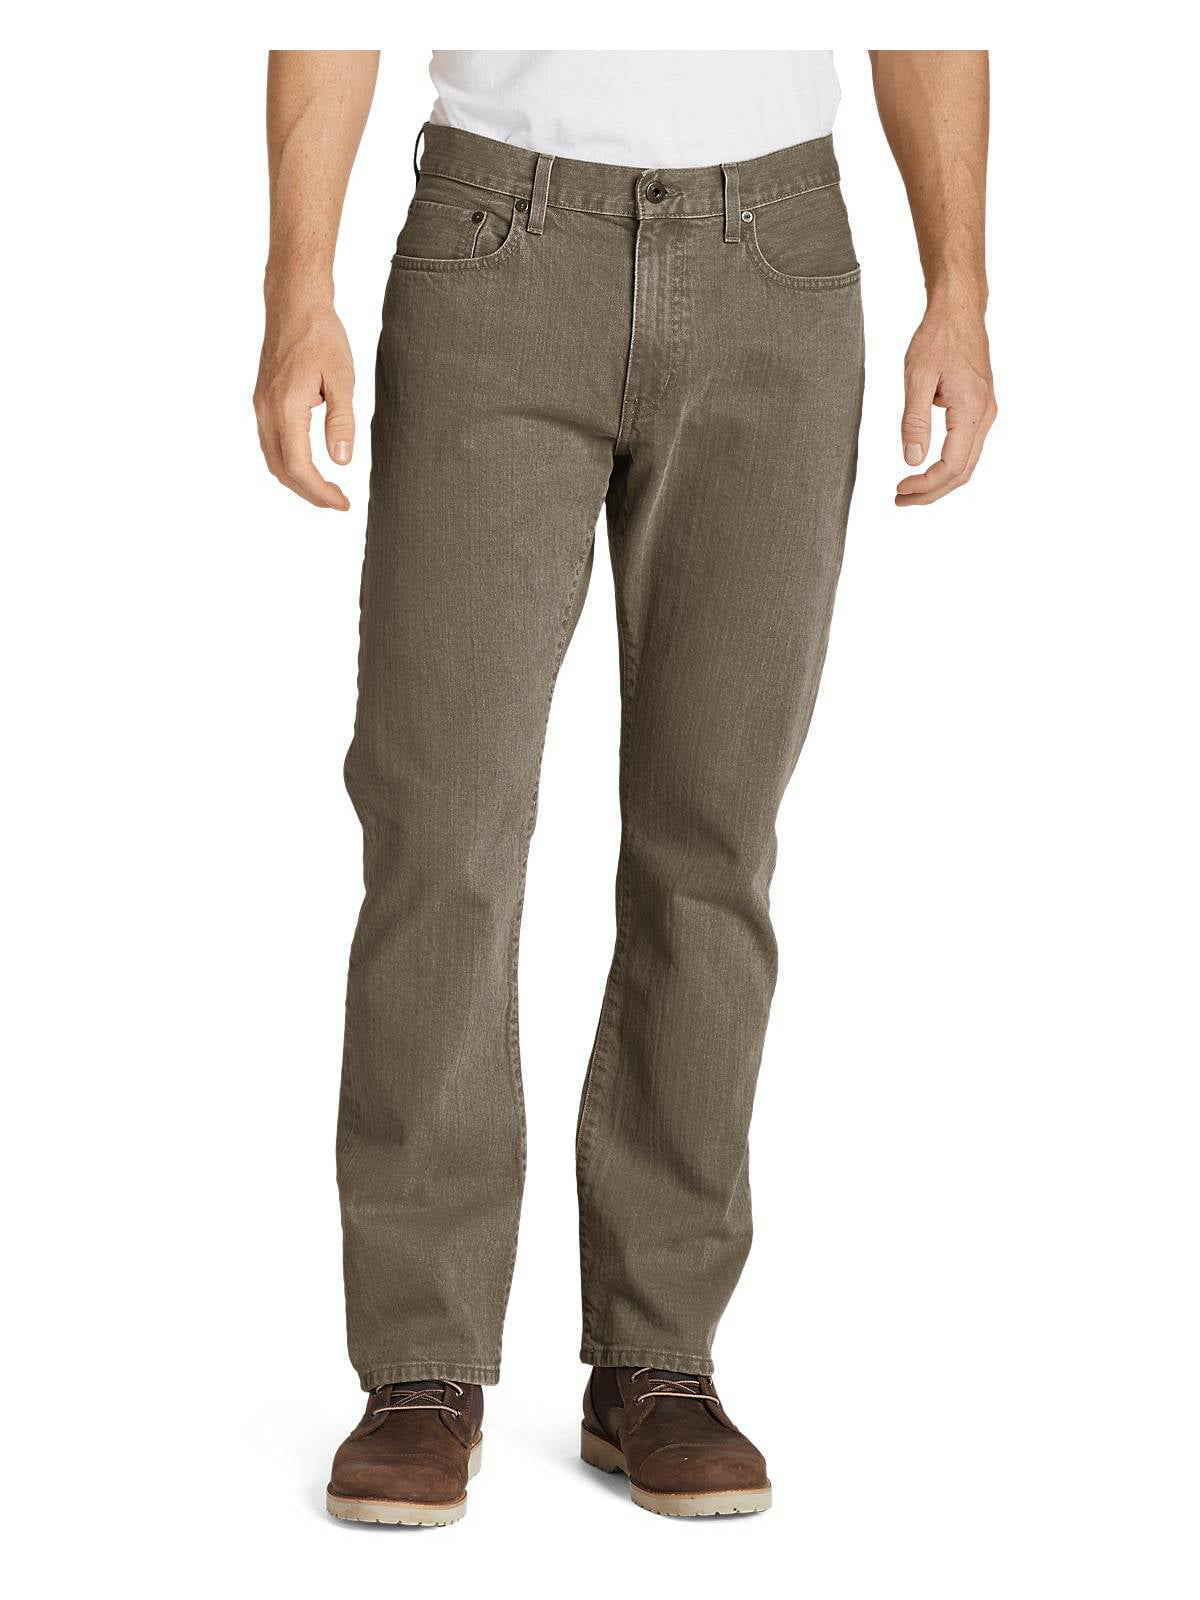 Eddie Bauer - Eddie Bauer Men's Flex Jeans - Straight Fit - Walmart.com